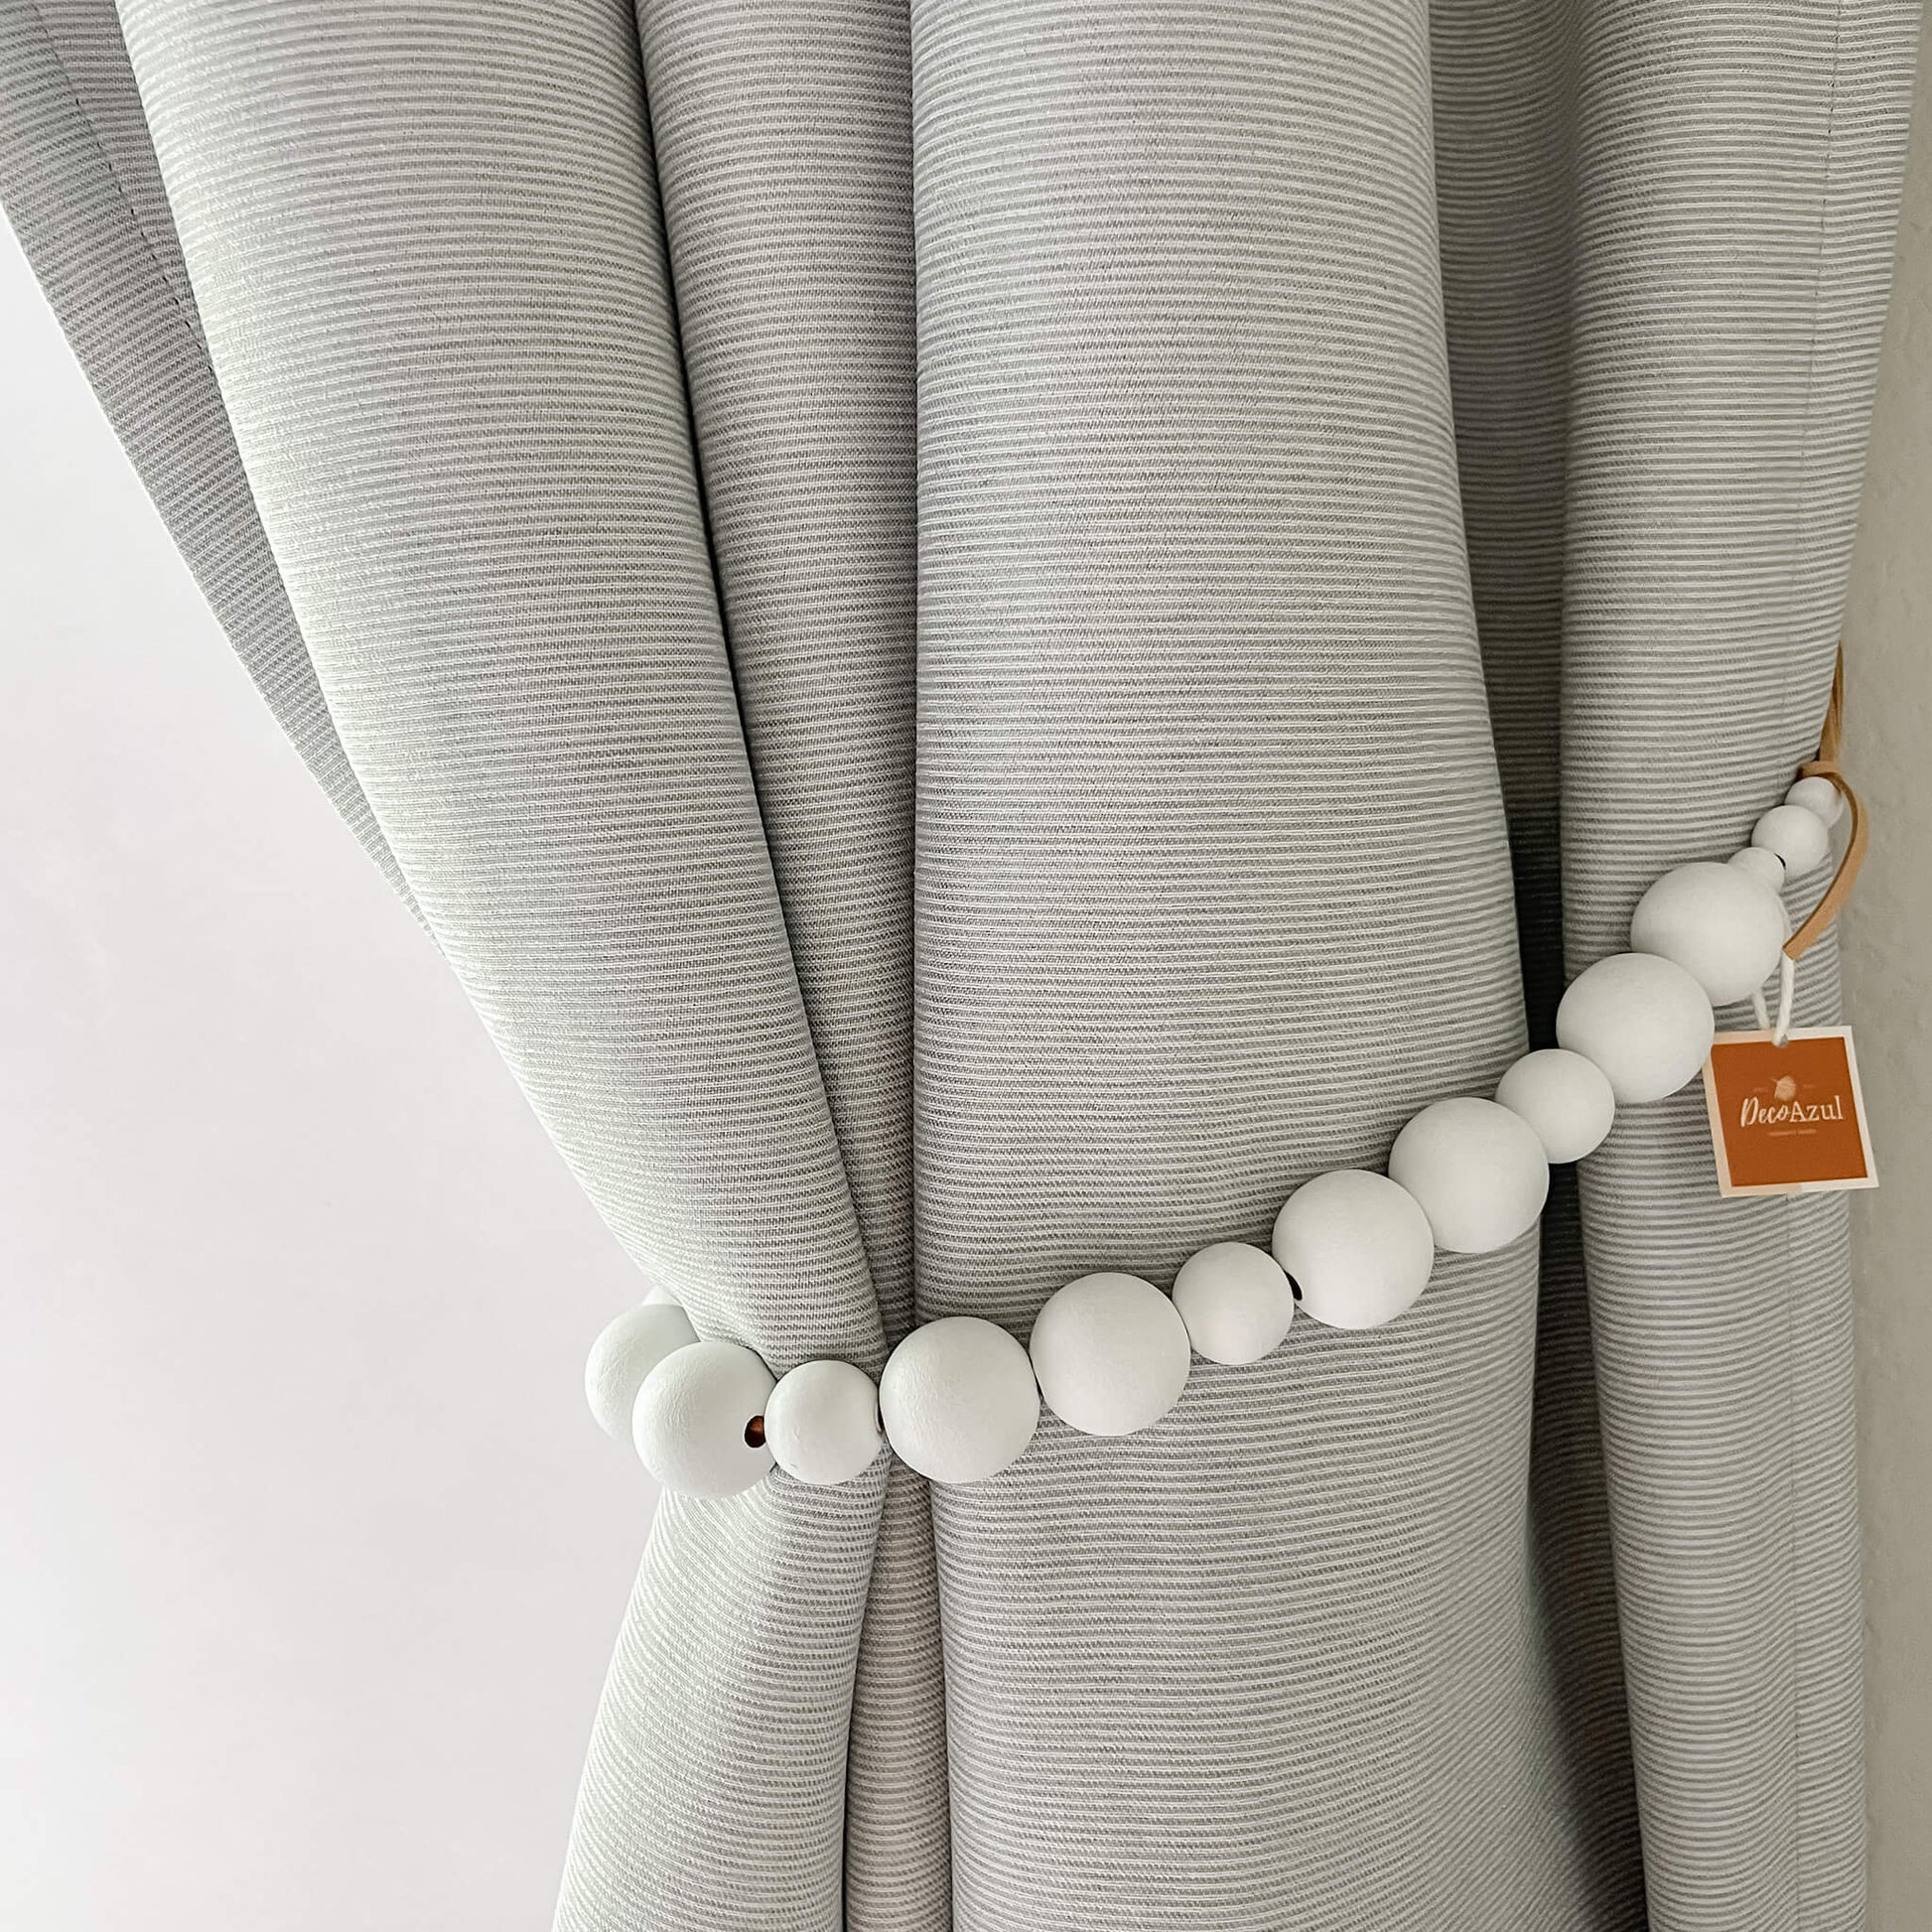 Alzapaños blancos para cortinas, Sujeta cortinas en color blanco – Deco Azul